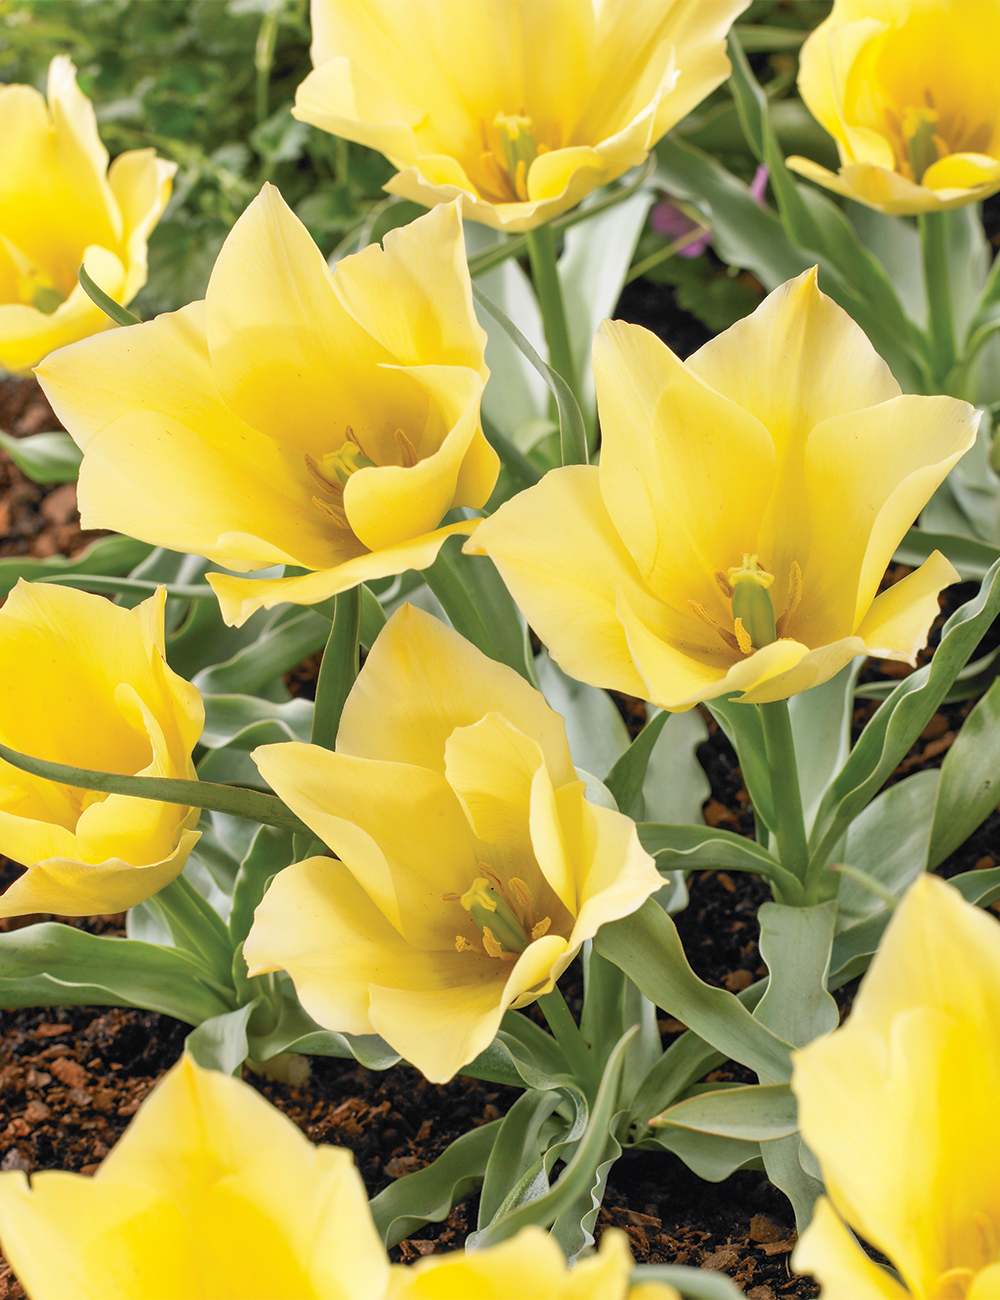 Species Tulip 'Bright Gem'